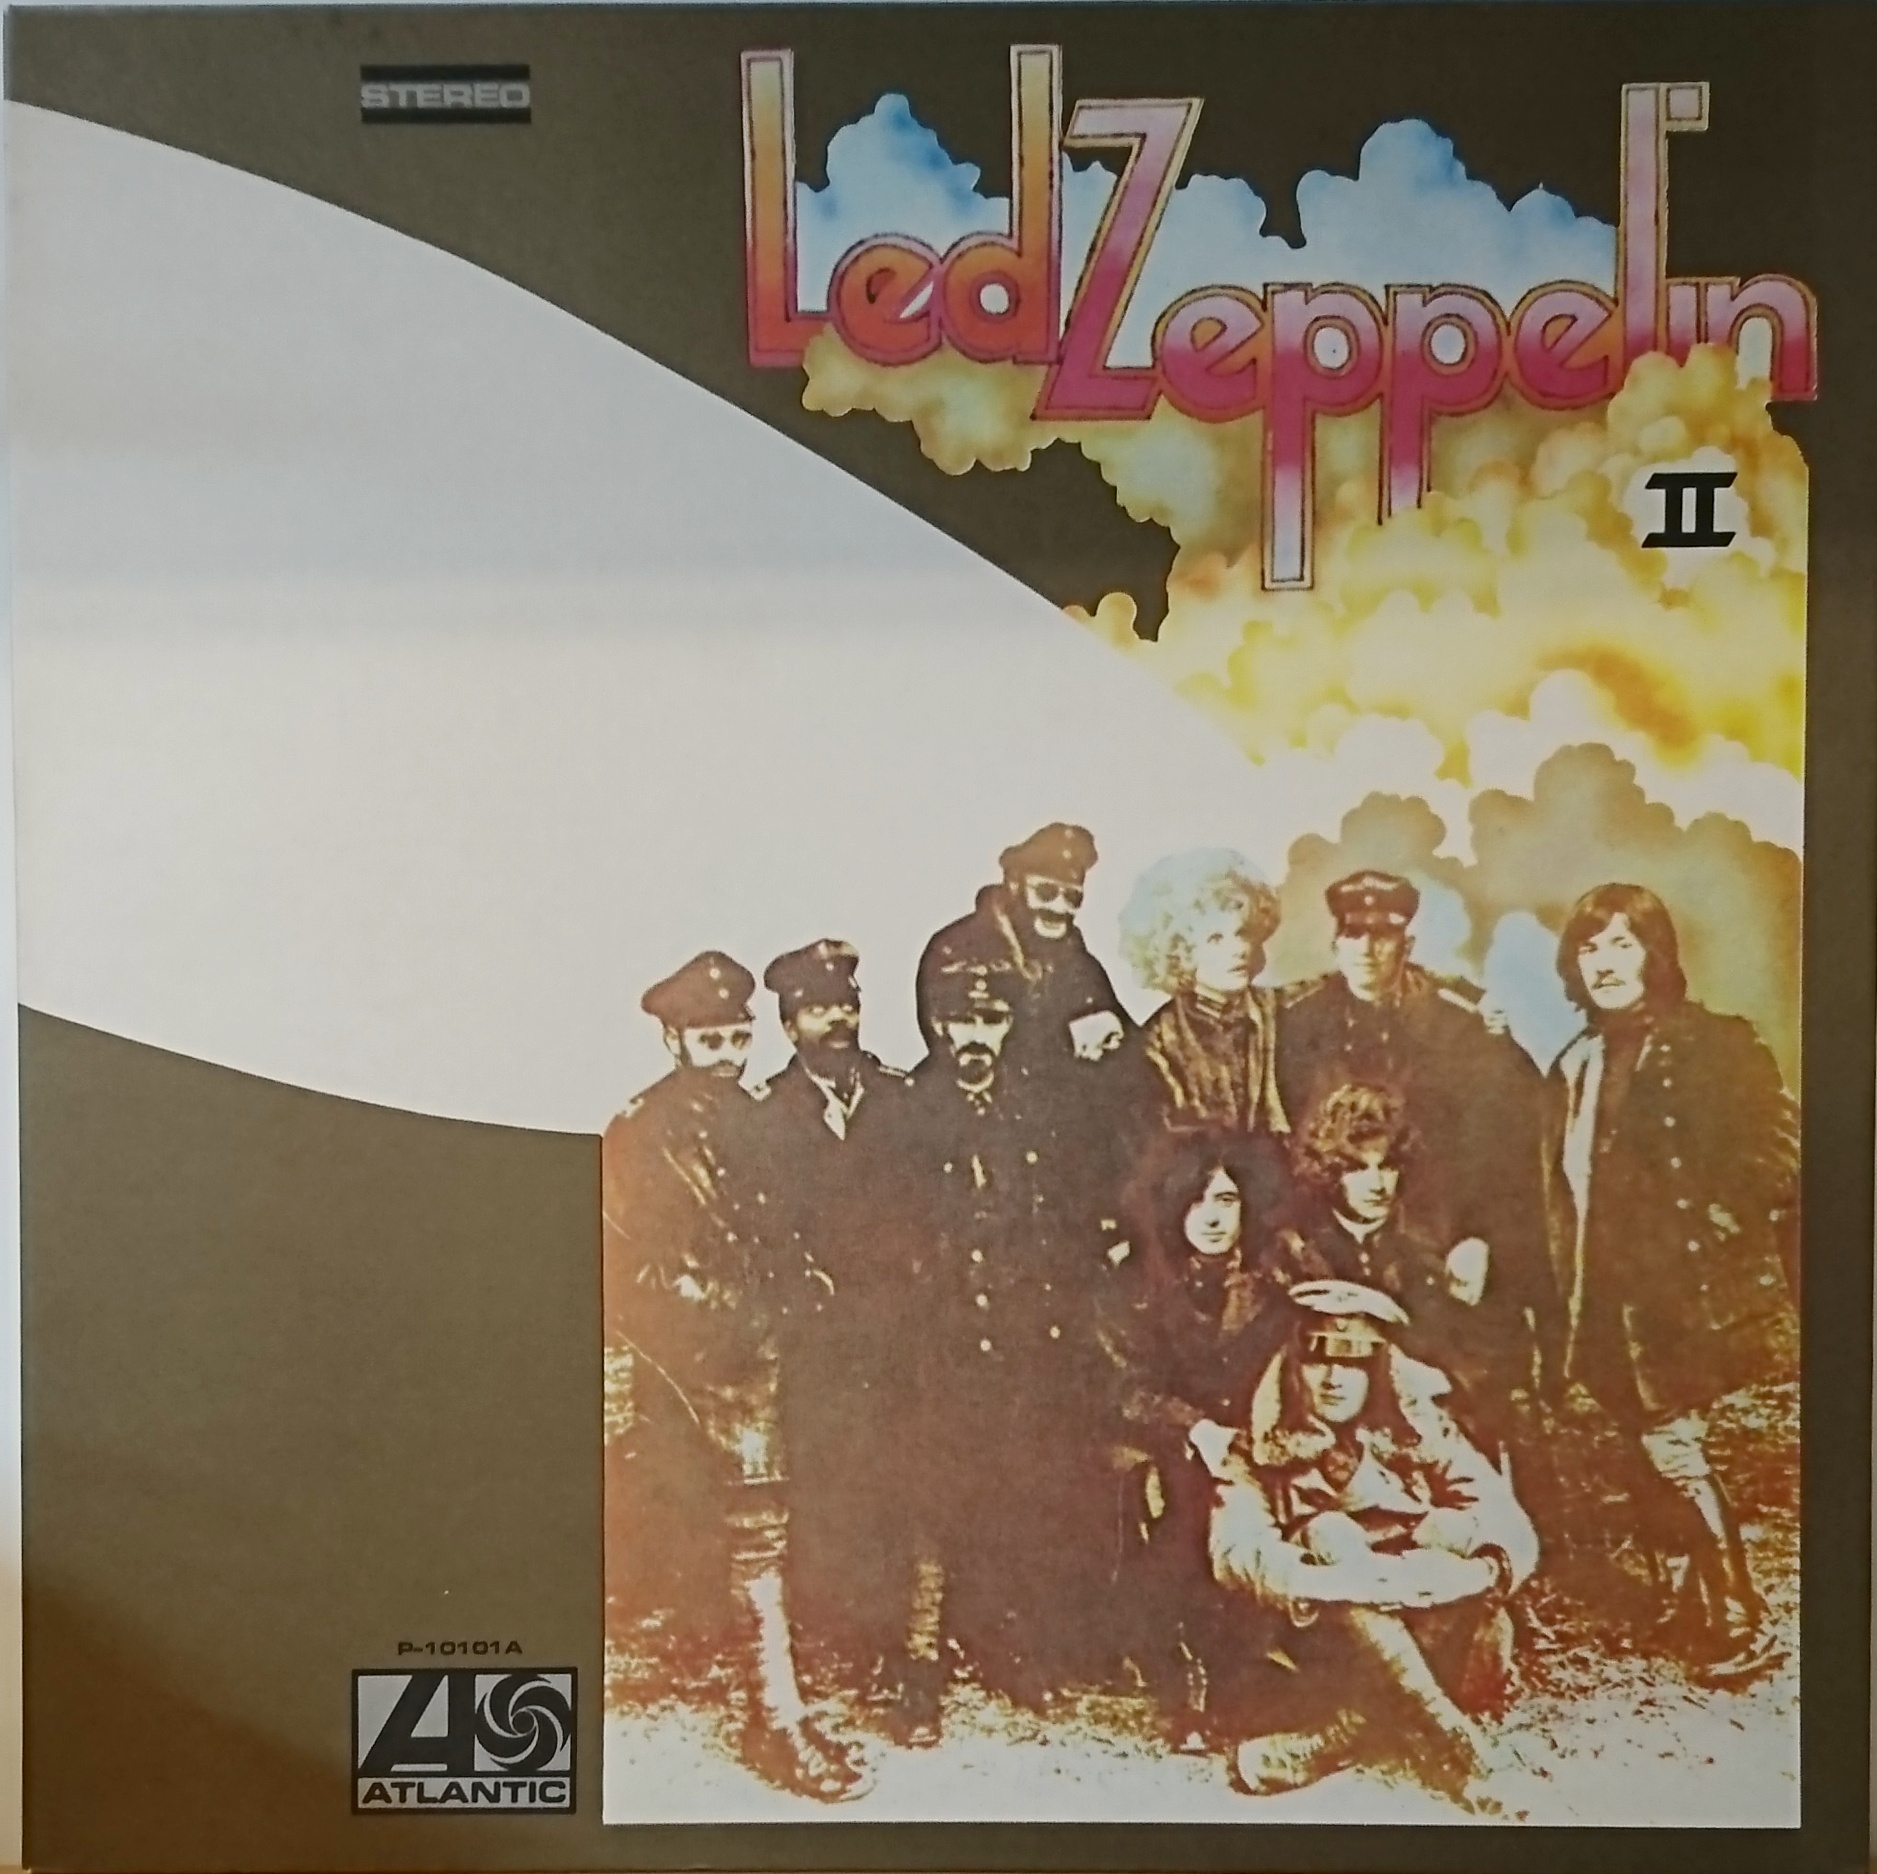 Led Zeppelin ‎– II | 中古レコード通販・買取のアカル・レコーズ